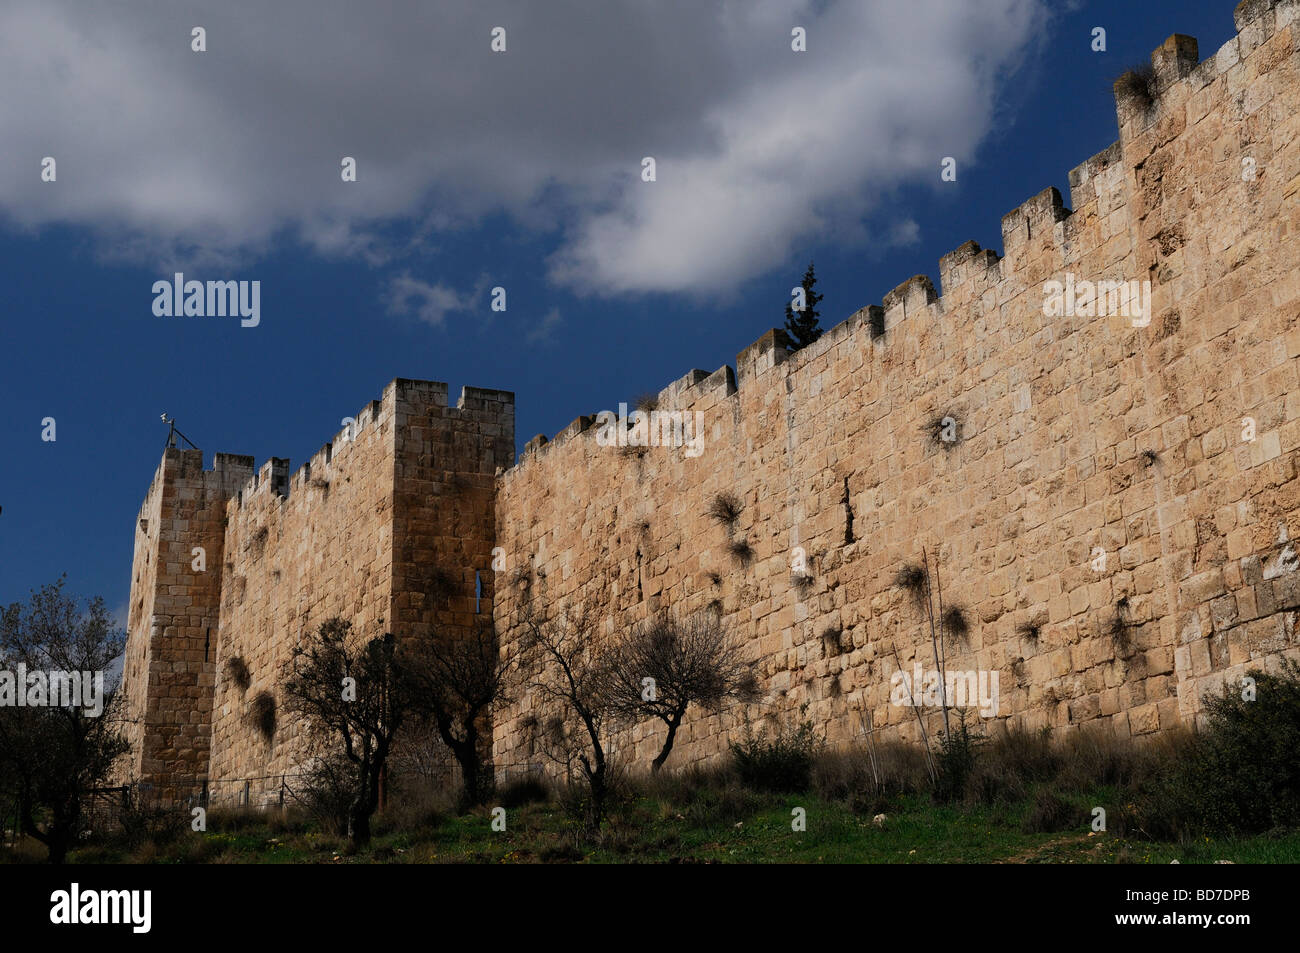 Vista delle mura ottomane della città vecchia costruita nel 16 ° secolo dal sultano turco Suleiman il magnifico, Gerusalemme Israele Foto Stock